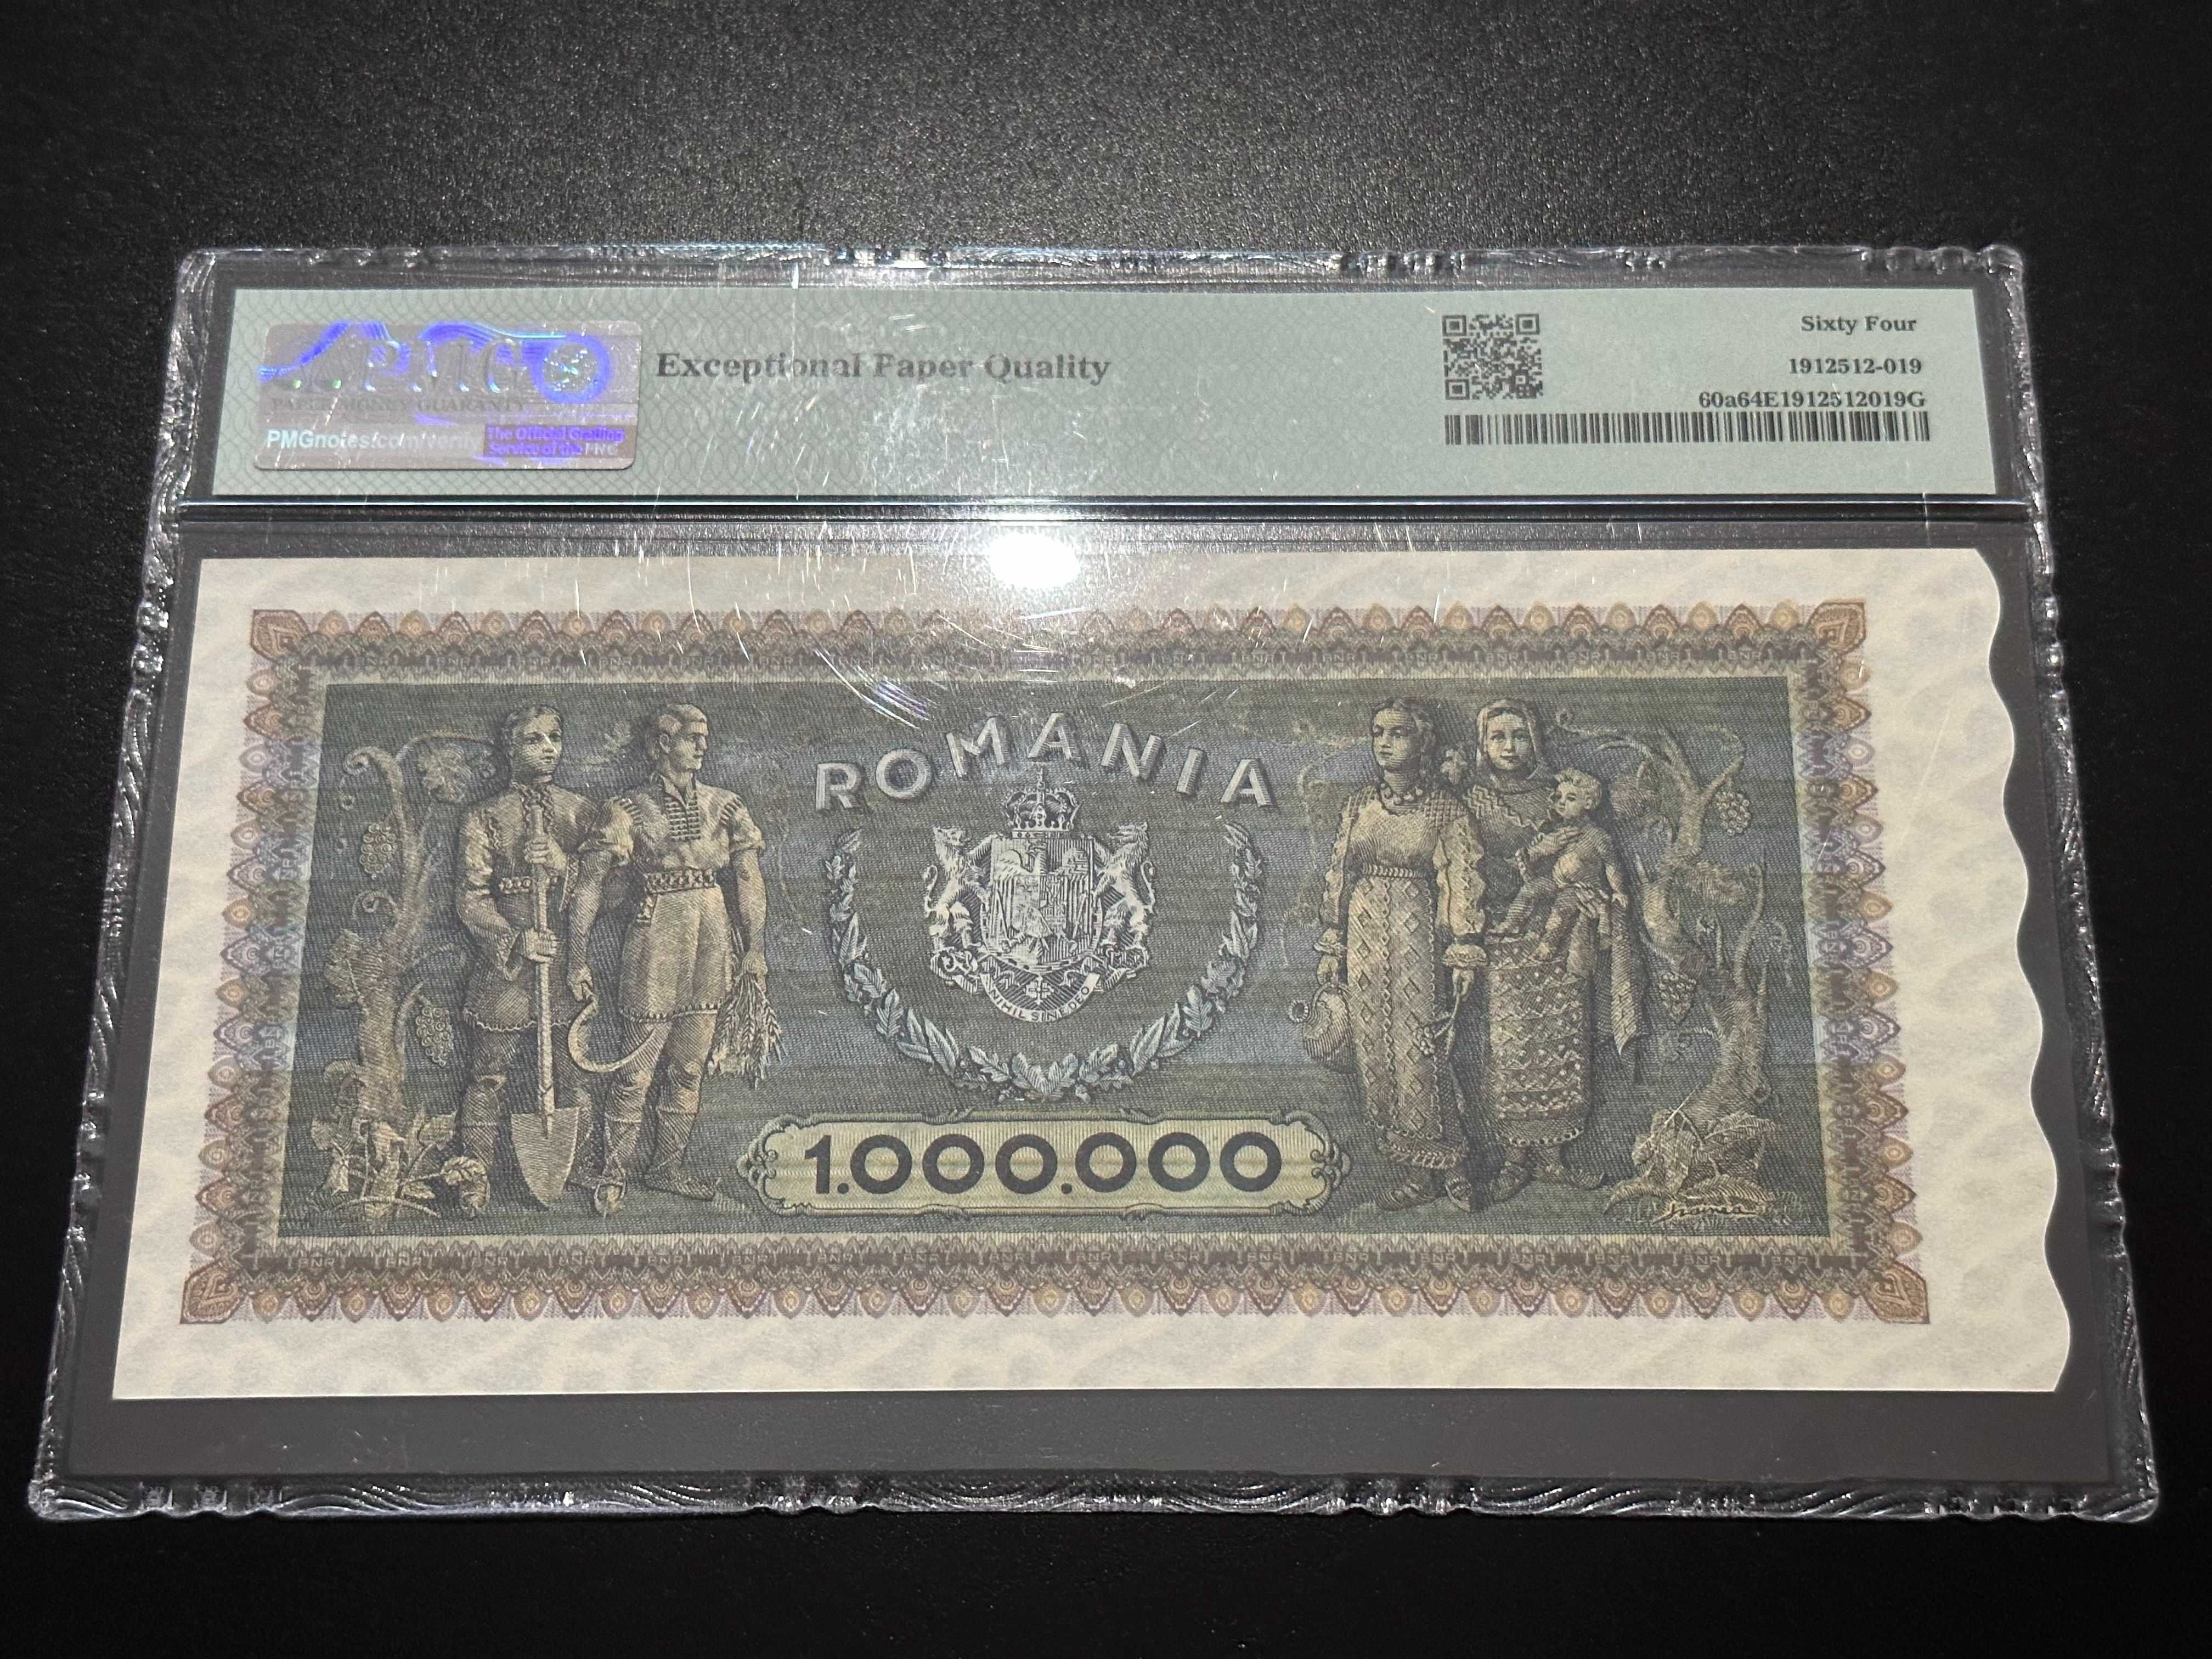 Vand sau schimb cu alte bancnote 1000000 lei 1947 UNC